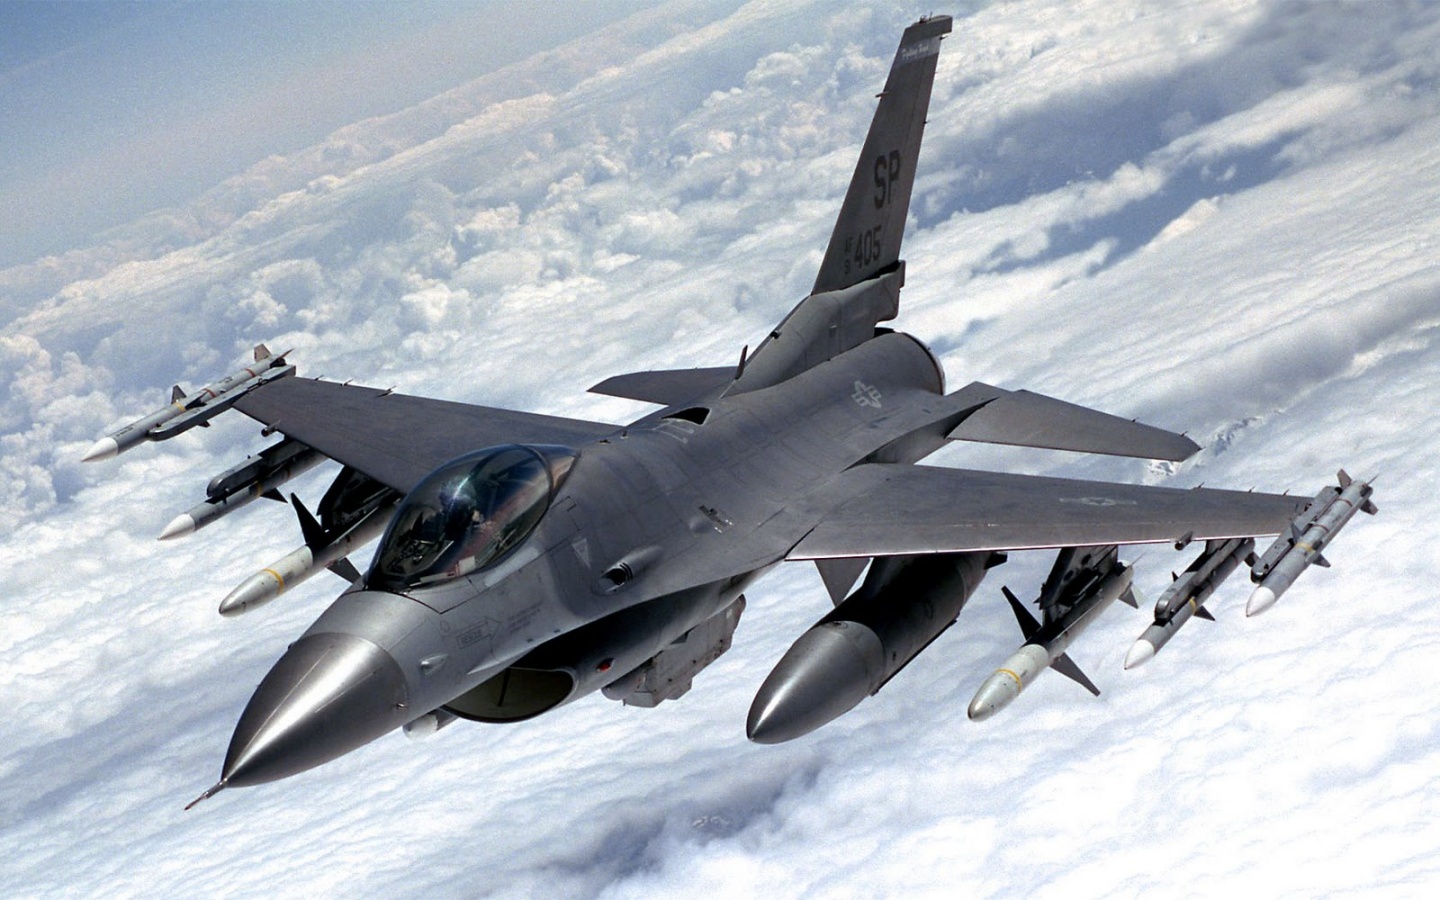 Máy bay chiến đấu F-16 được đánh giá cao nhờ khả năng linh hoạt trong không chiến